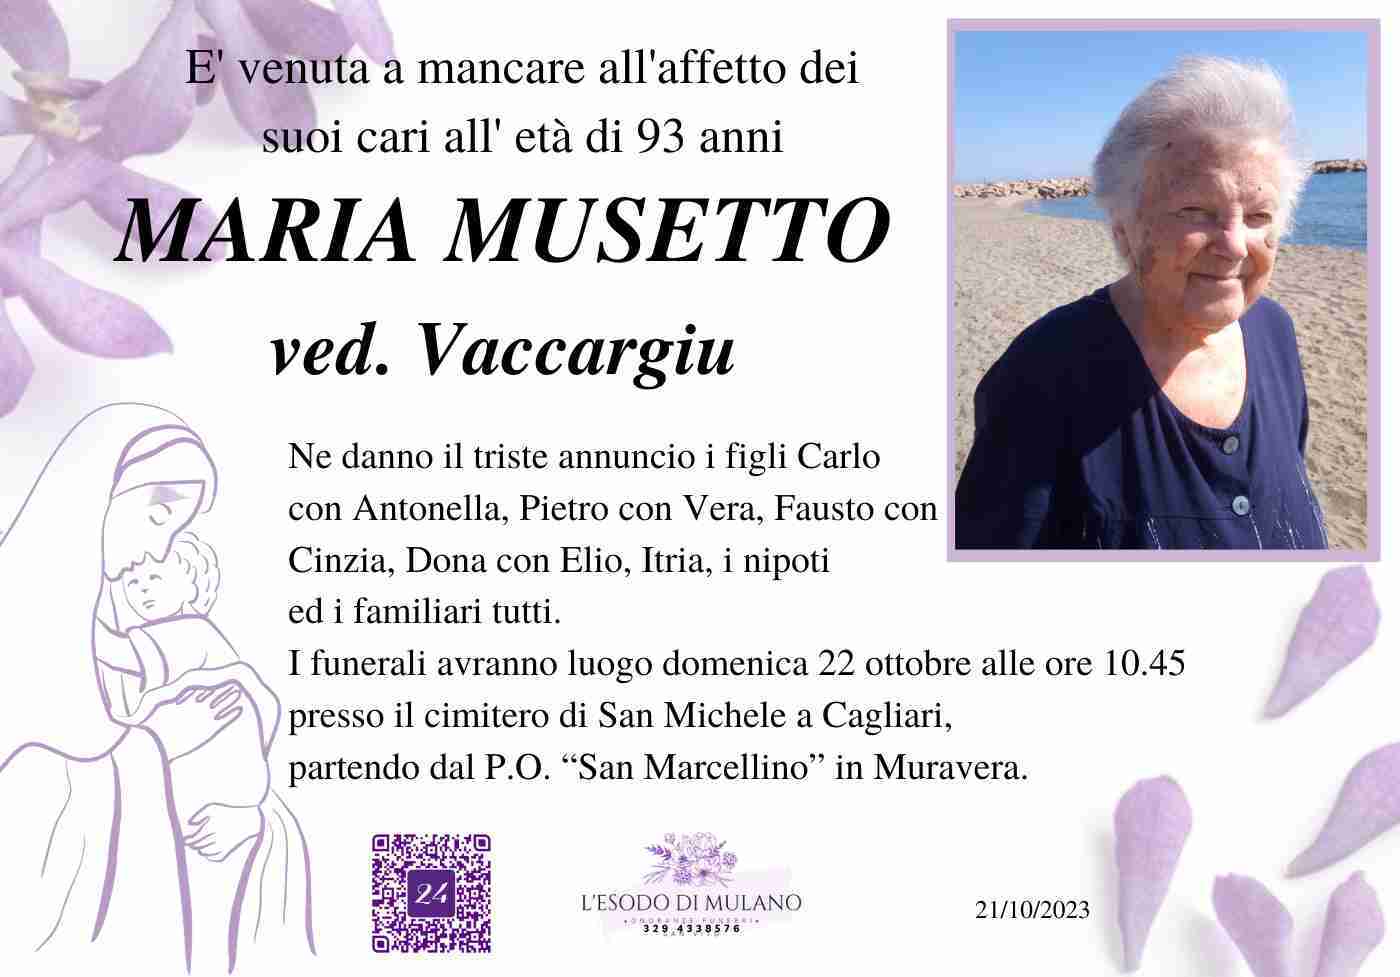 Maria Musetto